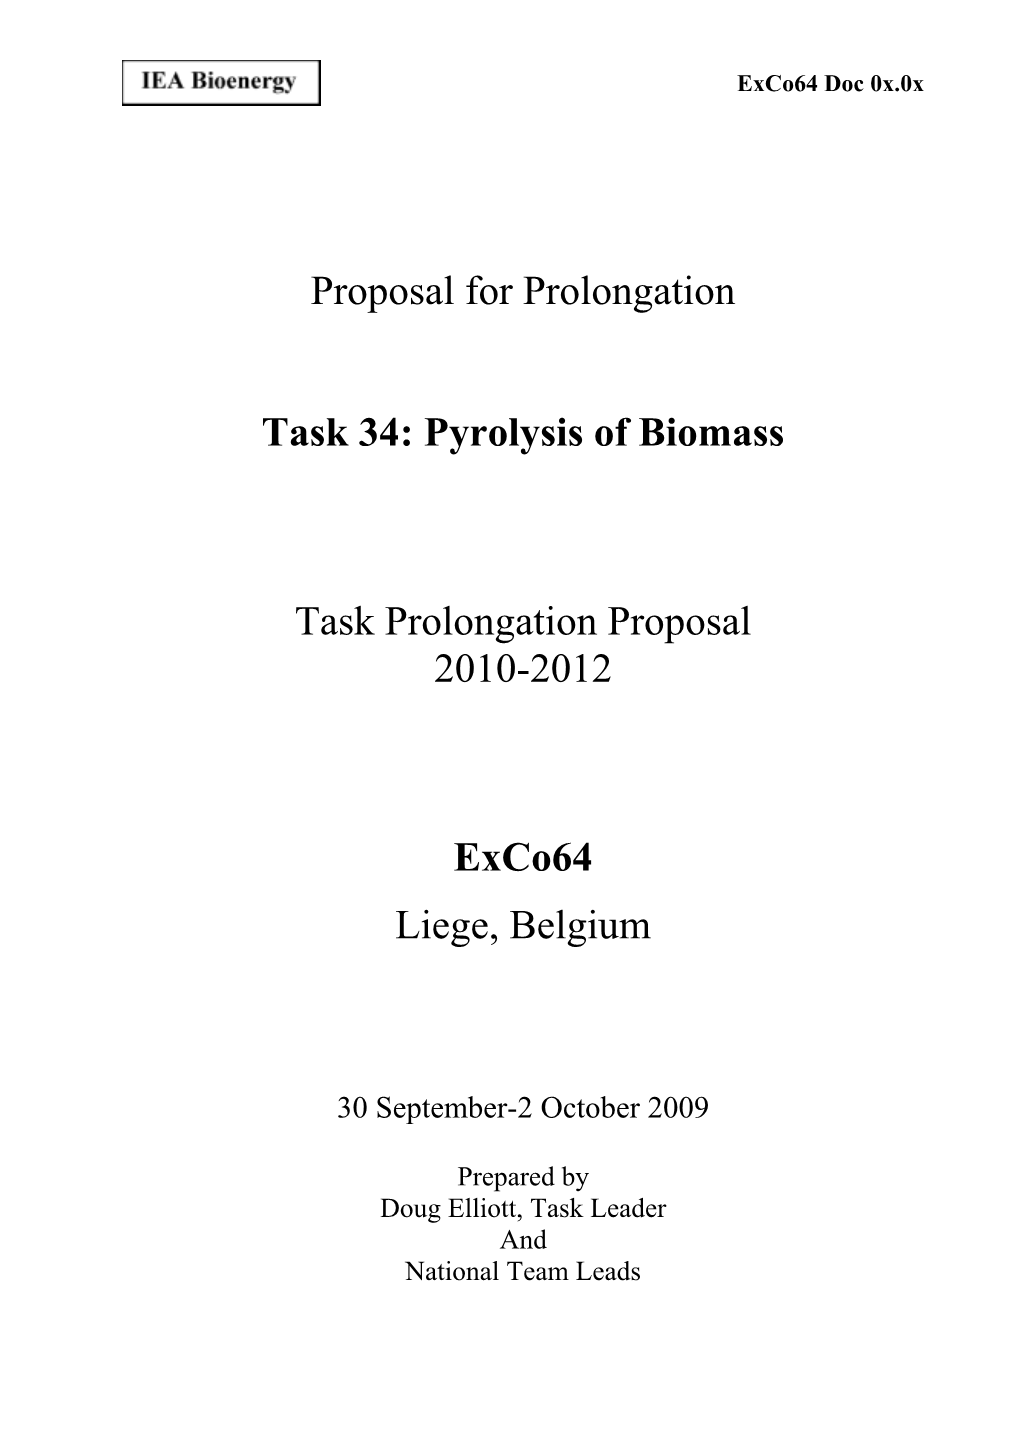 Task 34: Pyrolysis of Biomass